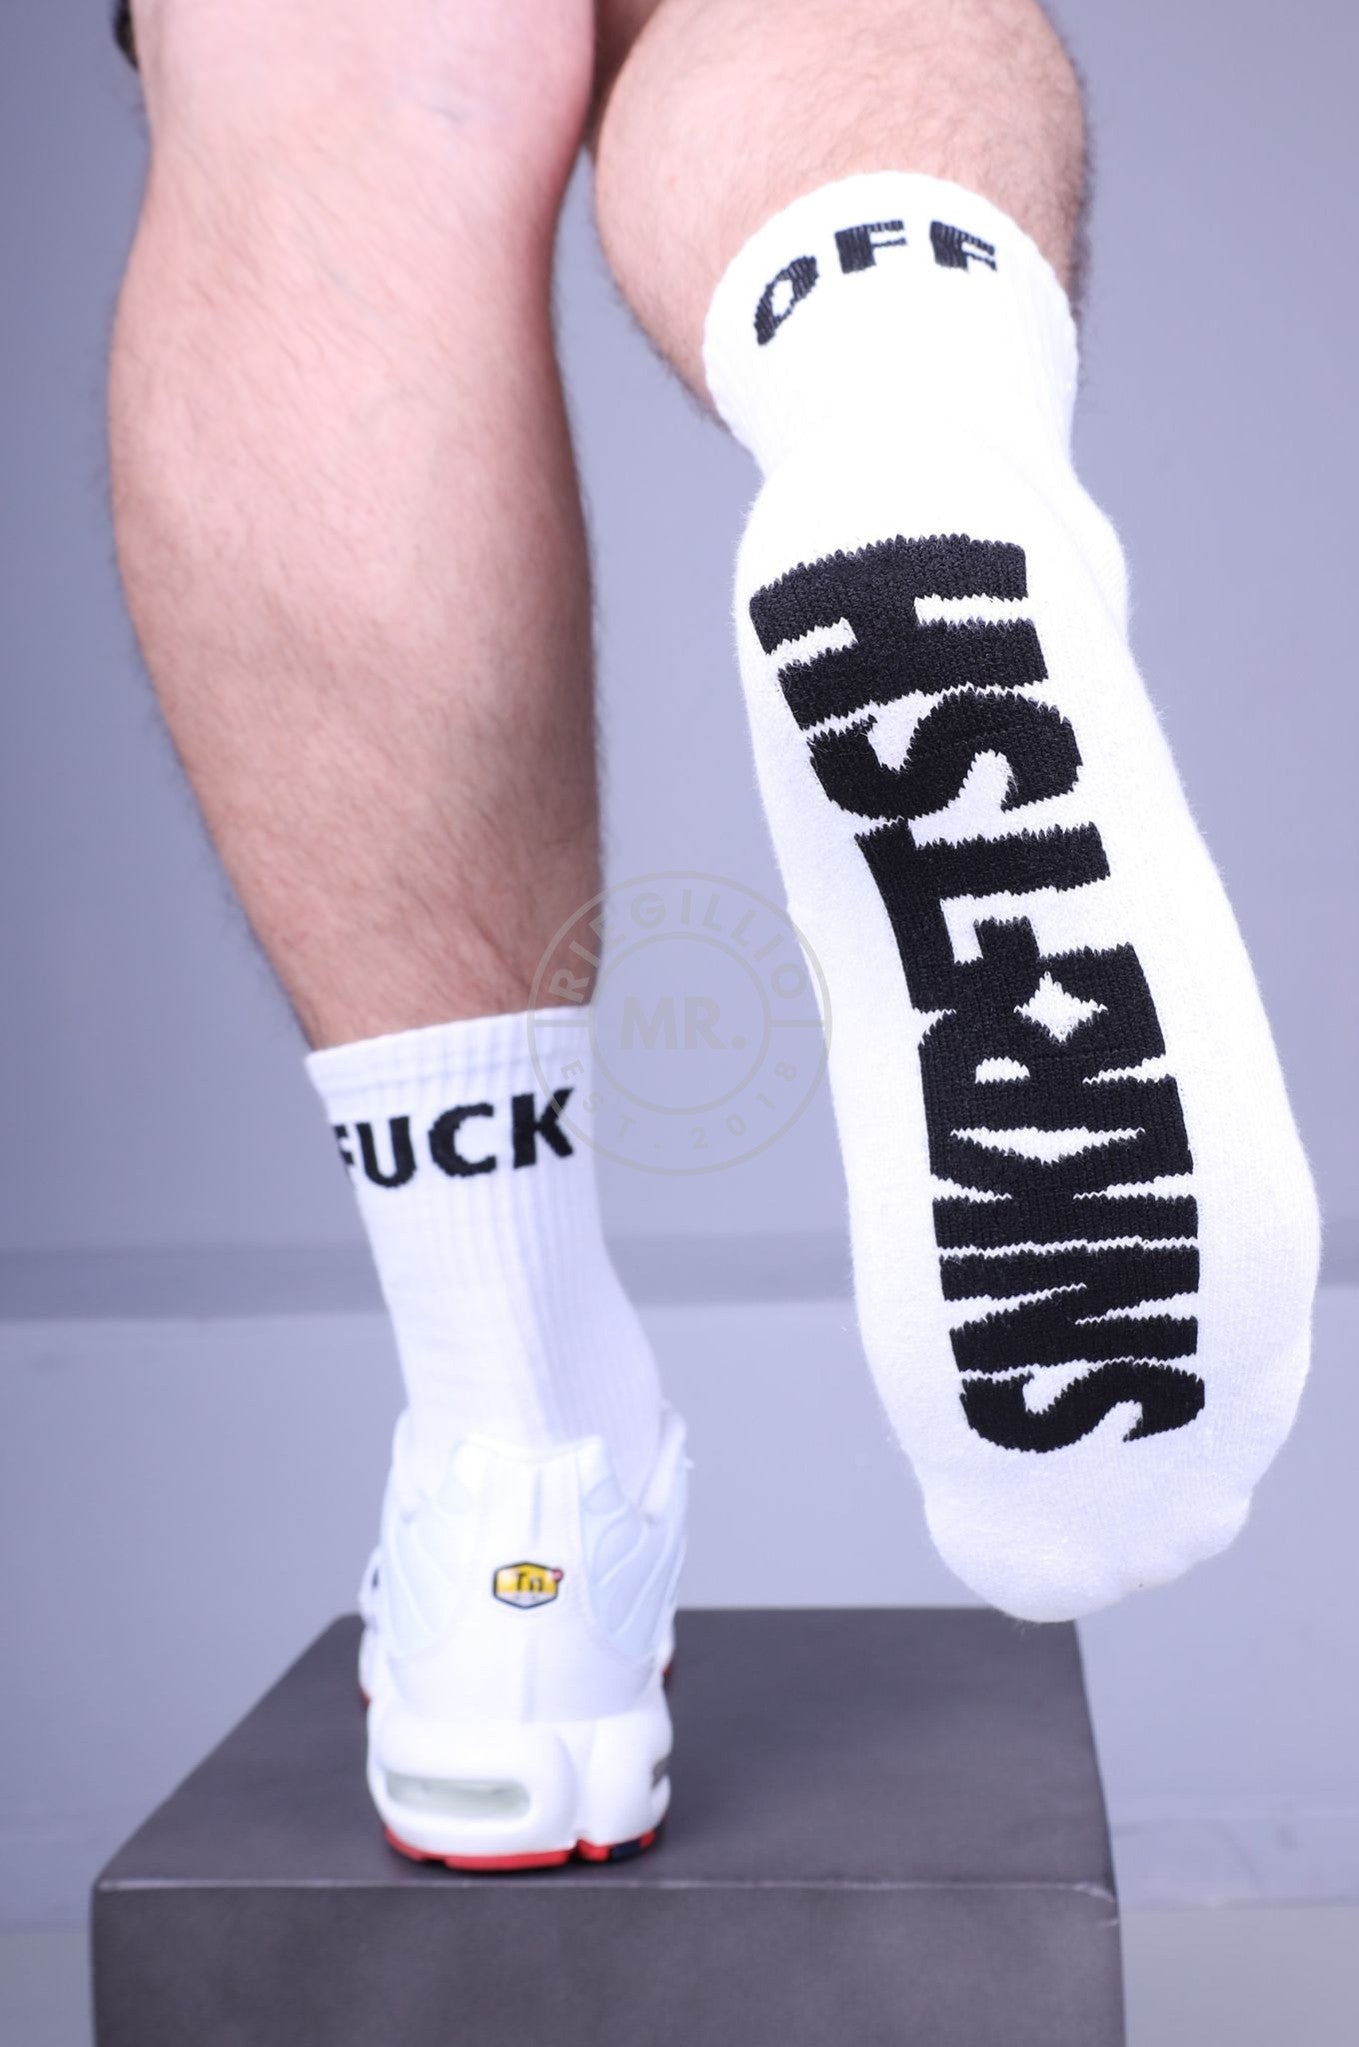 SNKRFTSH Socks - FUCK OFF-at MR. Riegillio